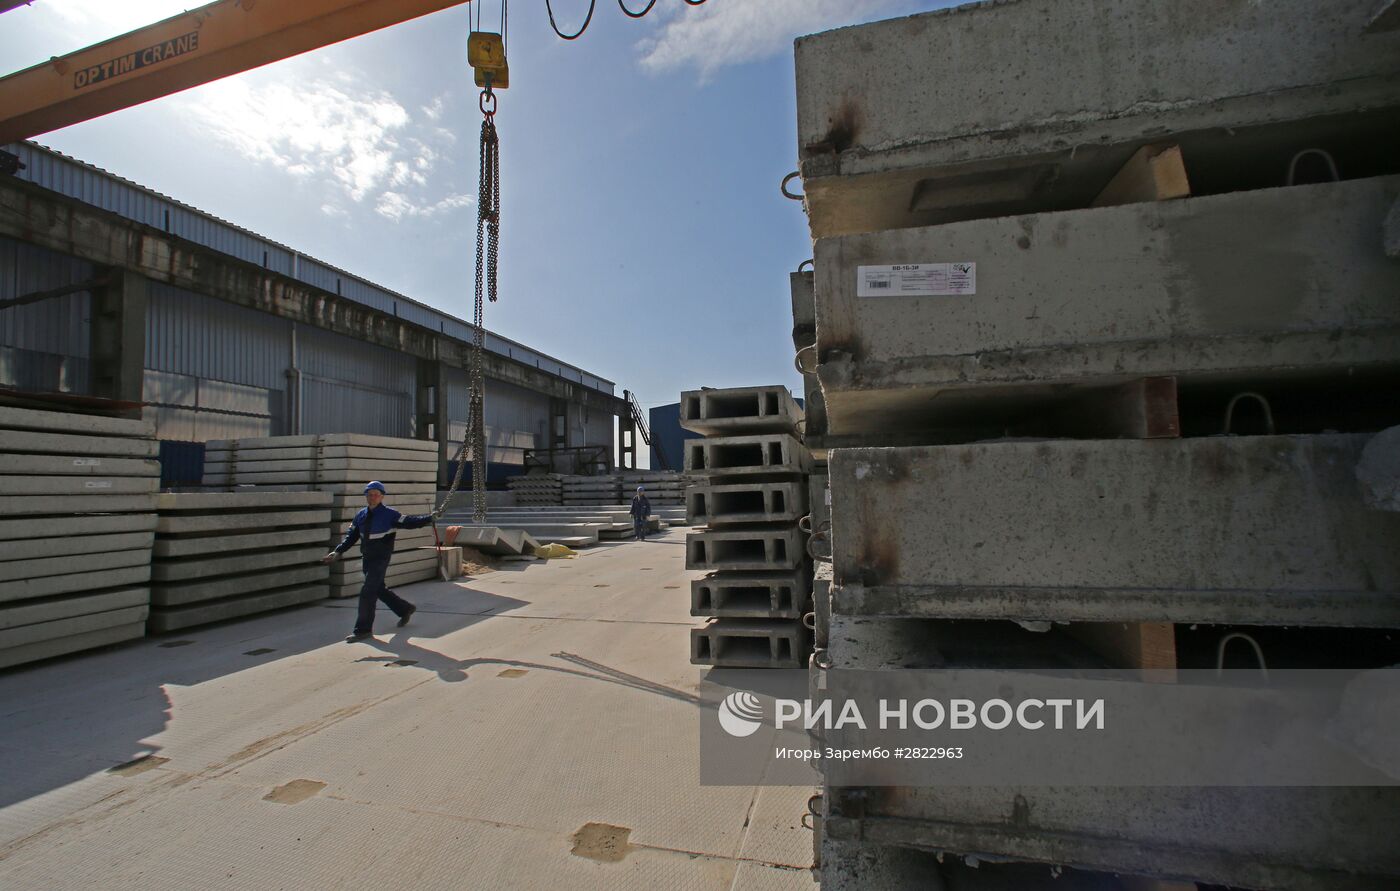 Завод железобетонных изделий "ДСК-XXI век" в Калининграде